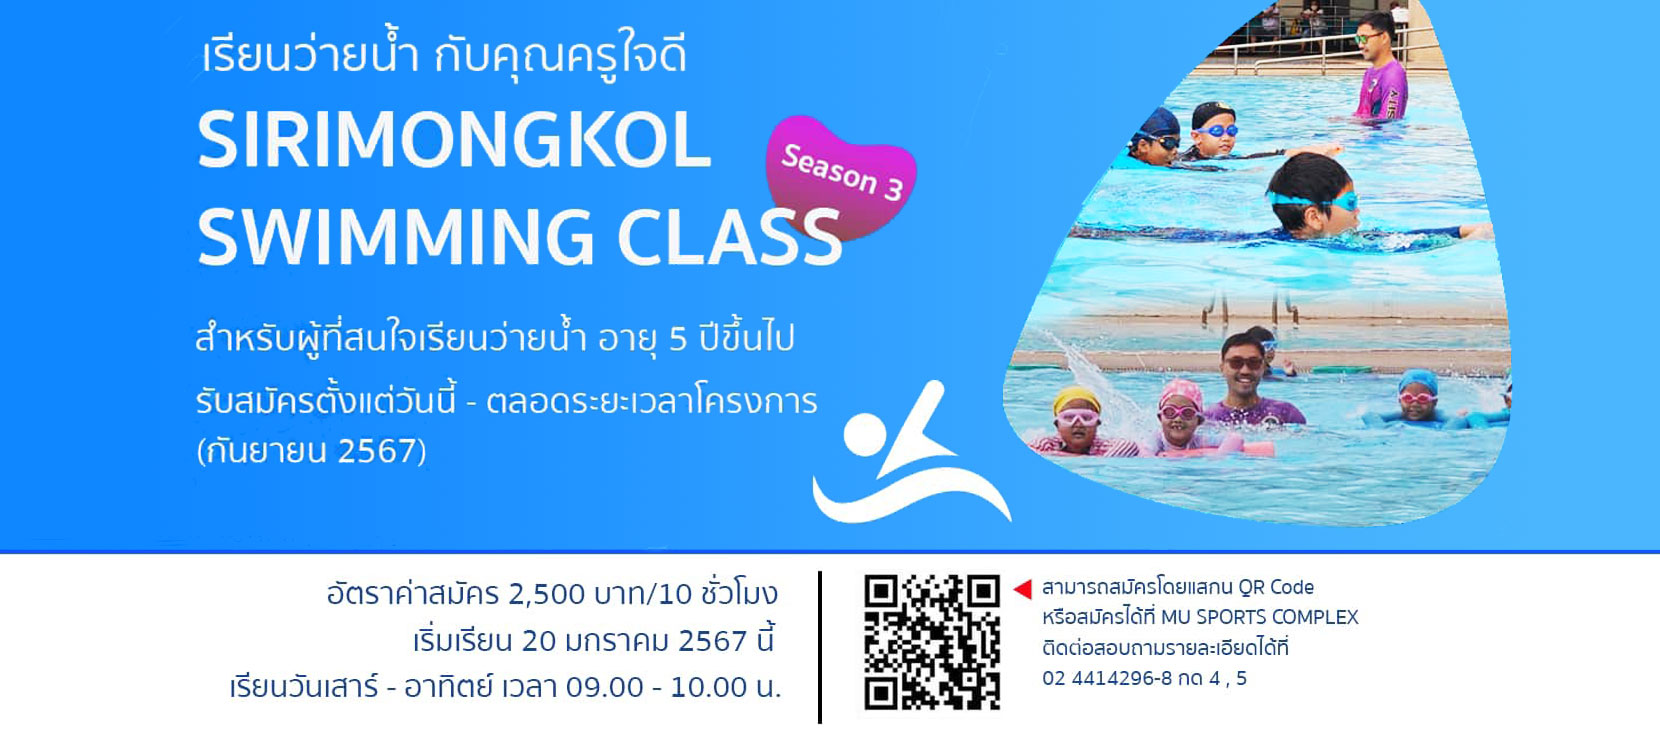 โครงการดีๆ เรียนว่ายน้ำกับครูใจดี Sirimongkol Swimmimg Class ซีซั่น3 